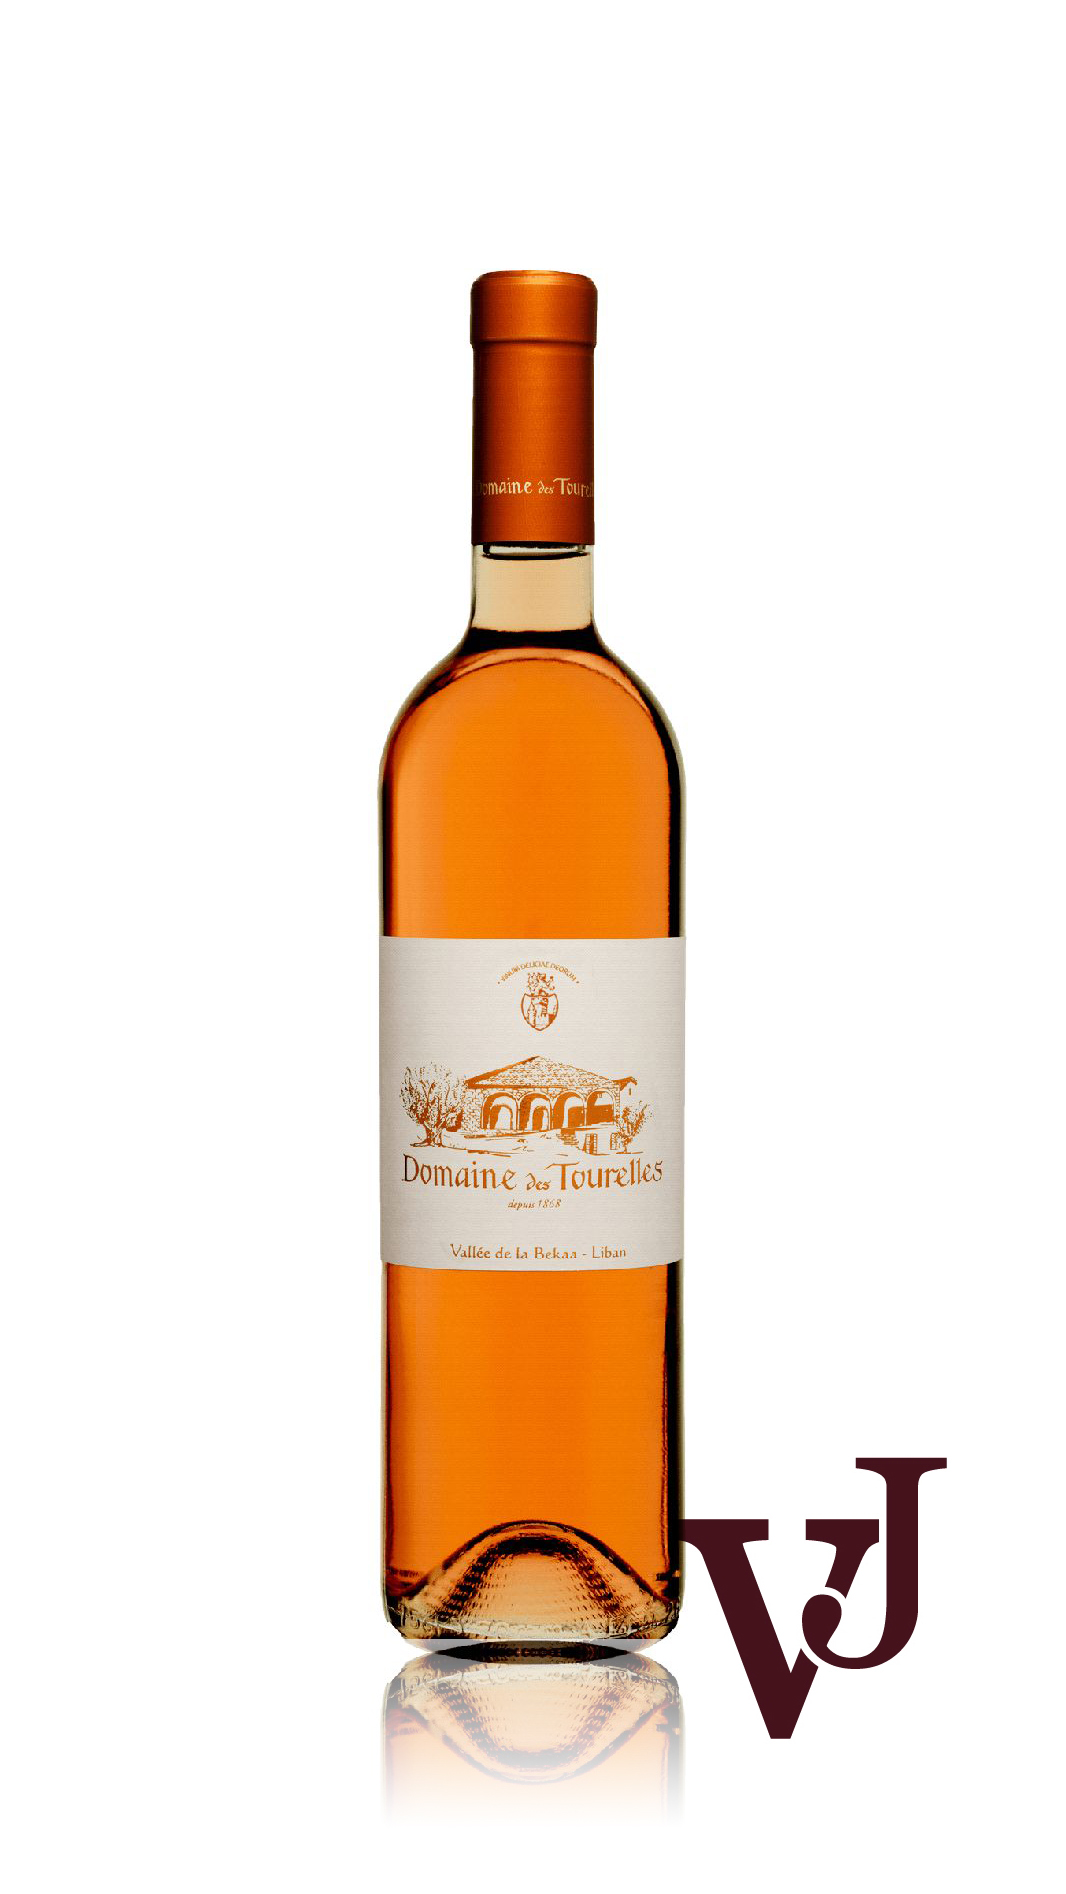 Rosé Vin - Domaine des Tourelles Rosé artikel nummer 7089901 från producenten Domaine des Tourelles från området Libanon